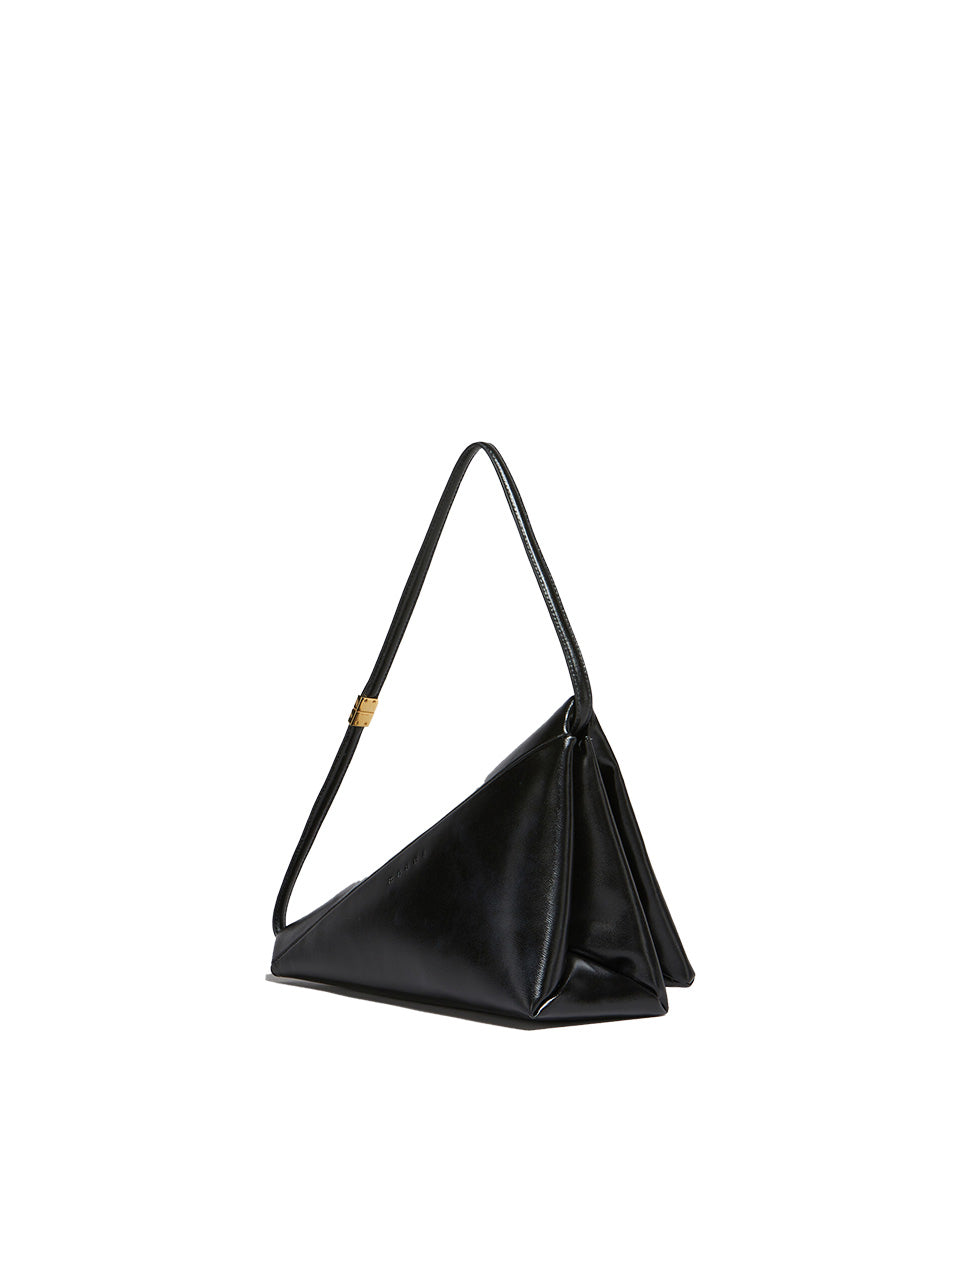 Leather Prisma Triangle Bag